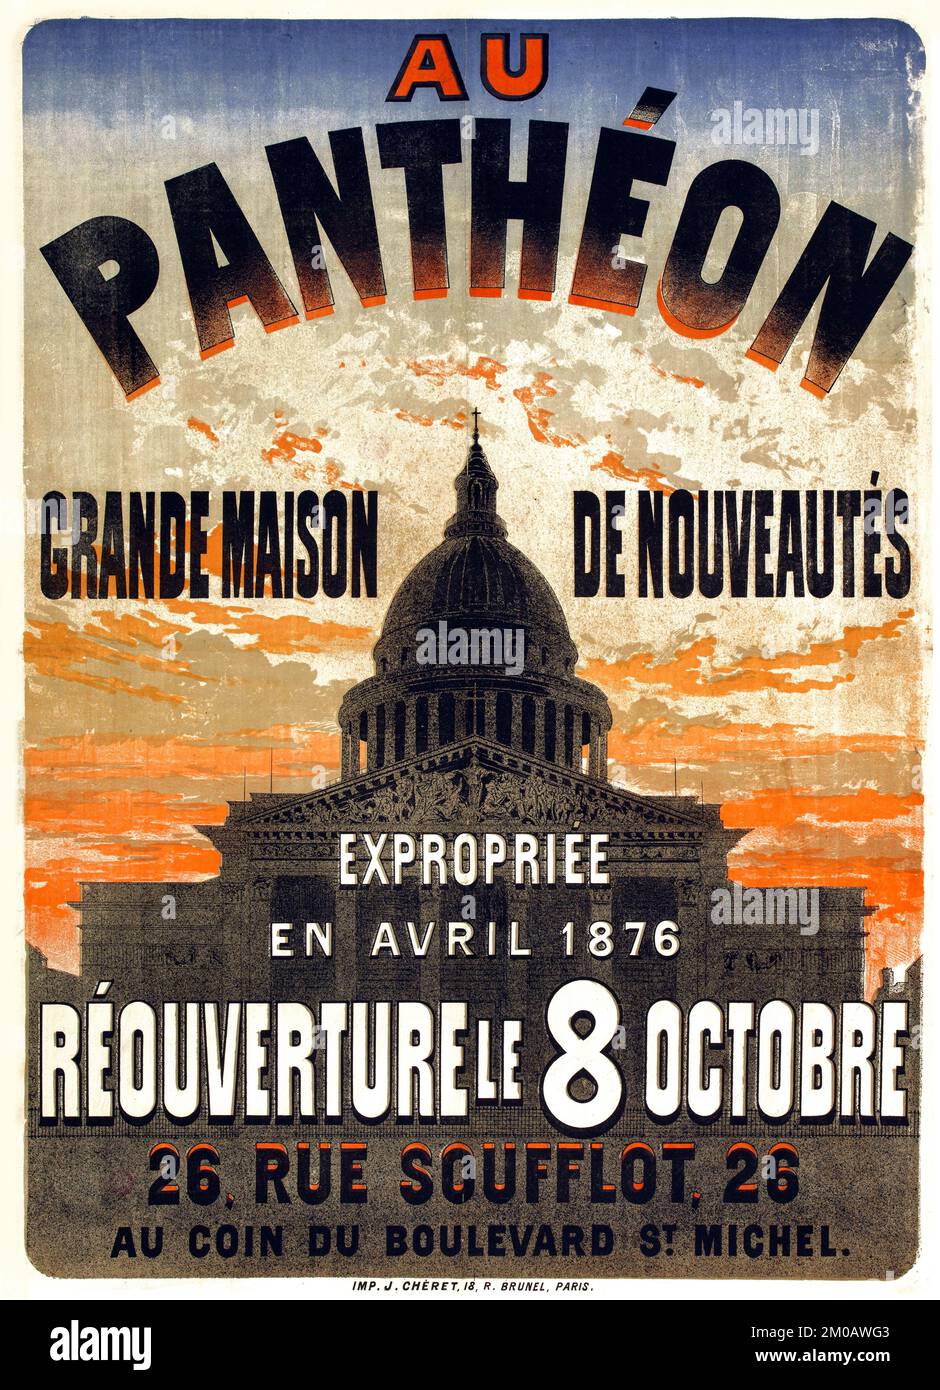 Au Panthéon, une grande maison de romanciers expropriée en avril 1876, rouvrant sur 8 octobre, 26 rue Soufflot - affiche de Jules Chéret c 1876 Banque D'Images